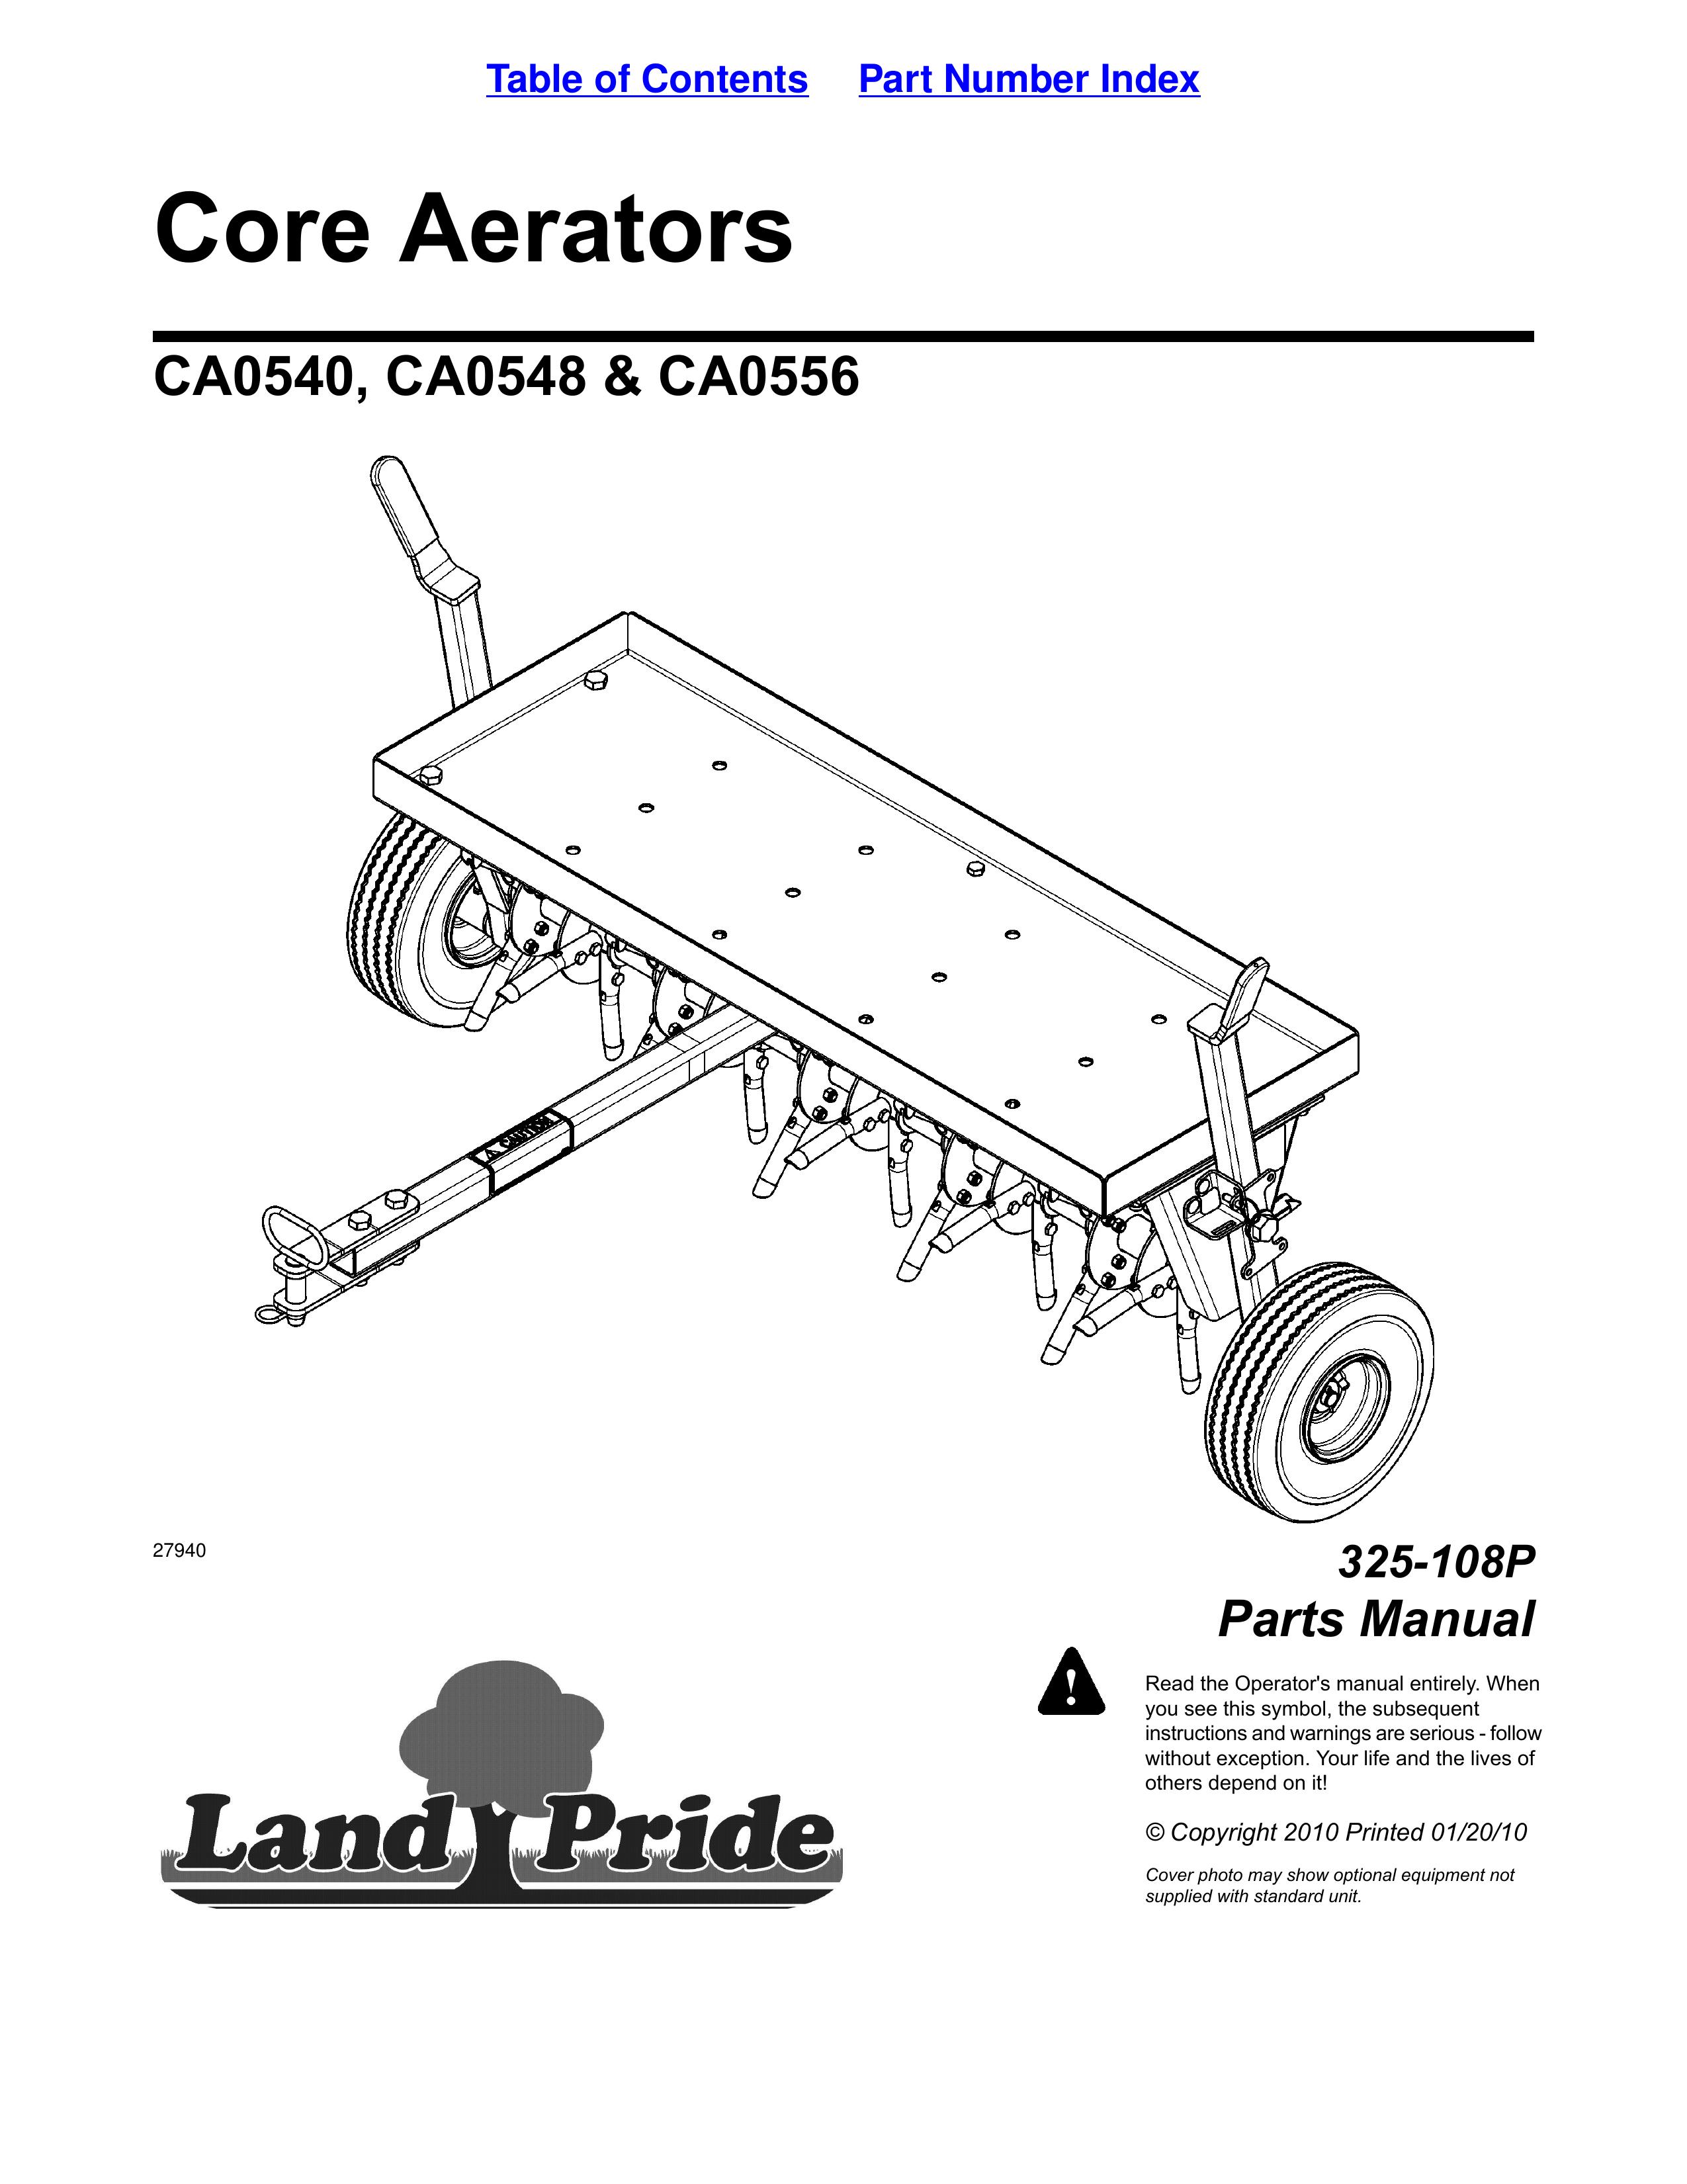 Land Pride CA0556 Lawn Aerator User Manual